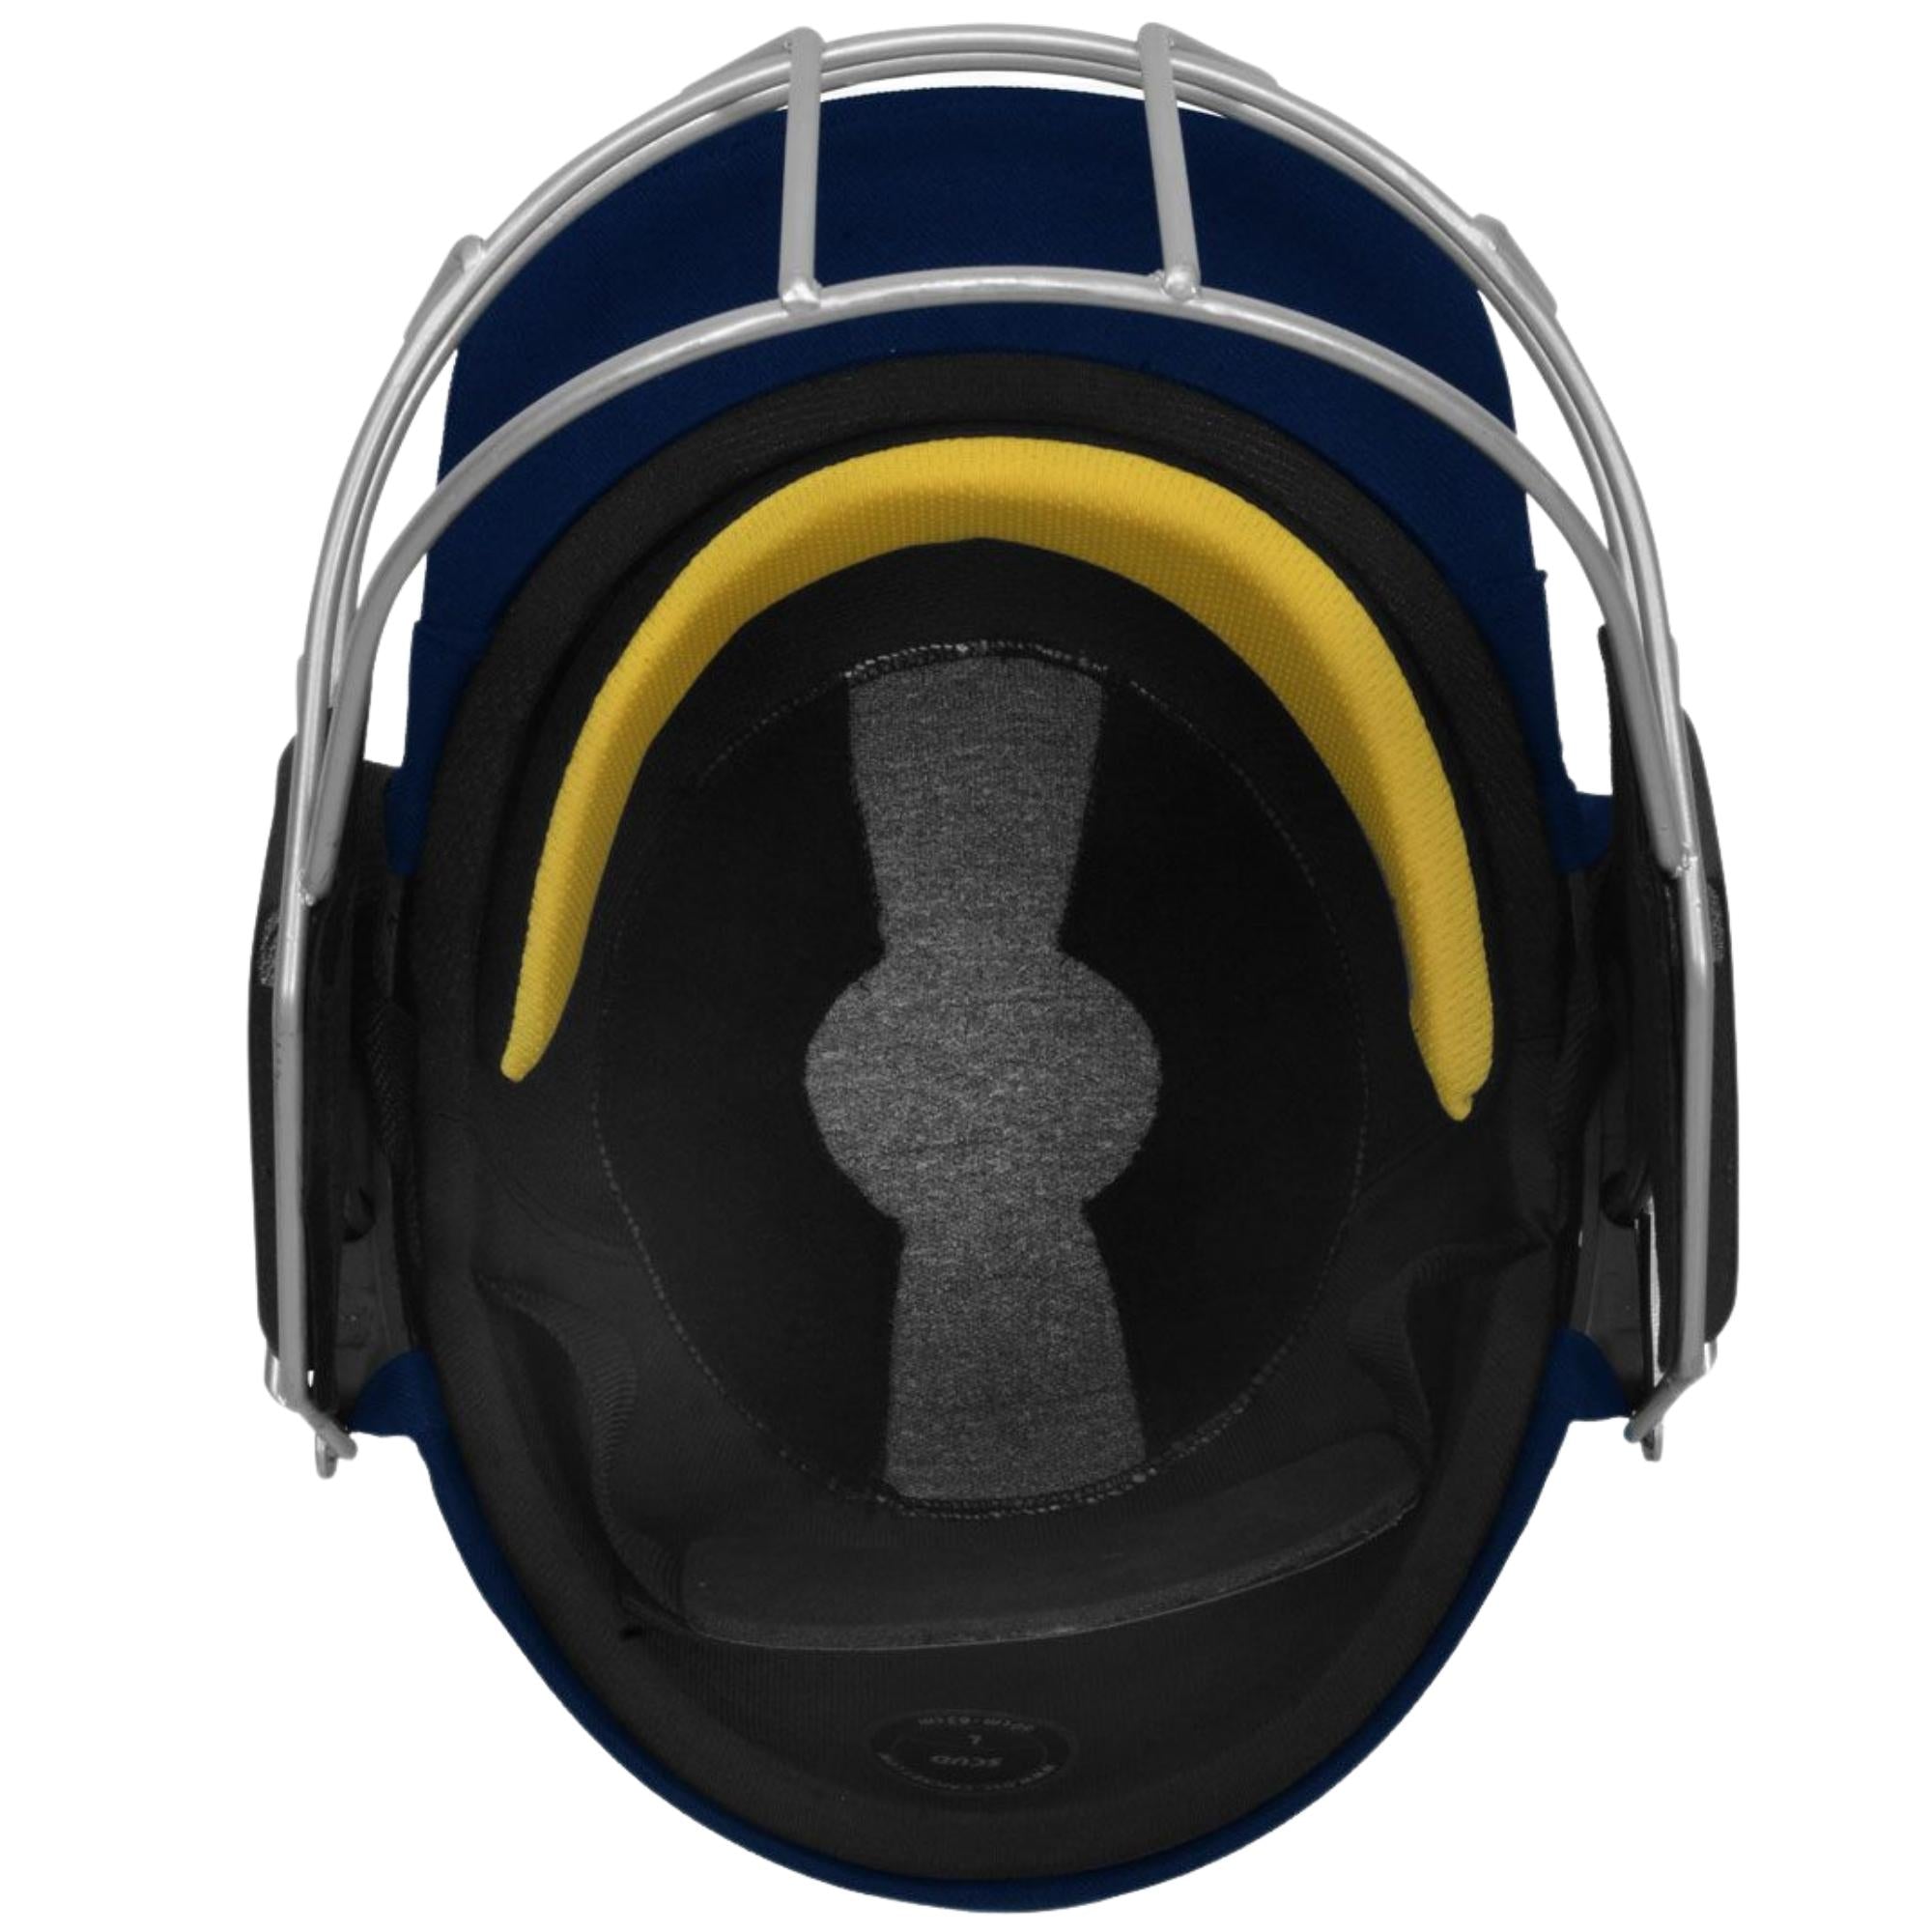 DSC Scud Lite Titanium Cricket Helmet